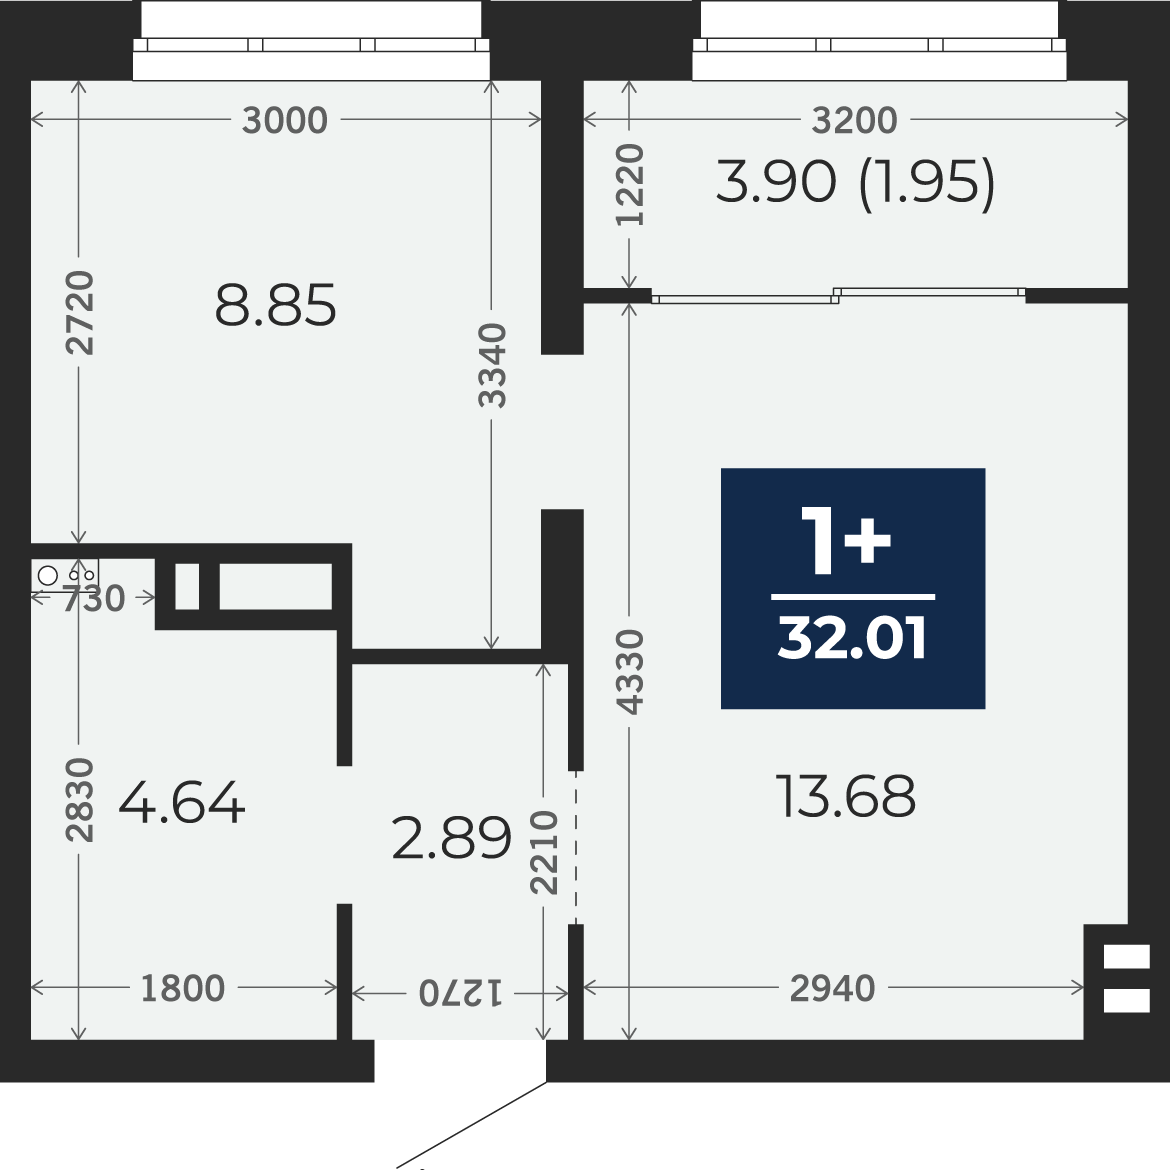 Квартира № 236, 1-комнатная, 32.01 кв. м, 4 этаж